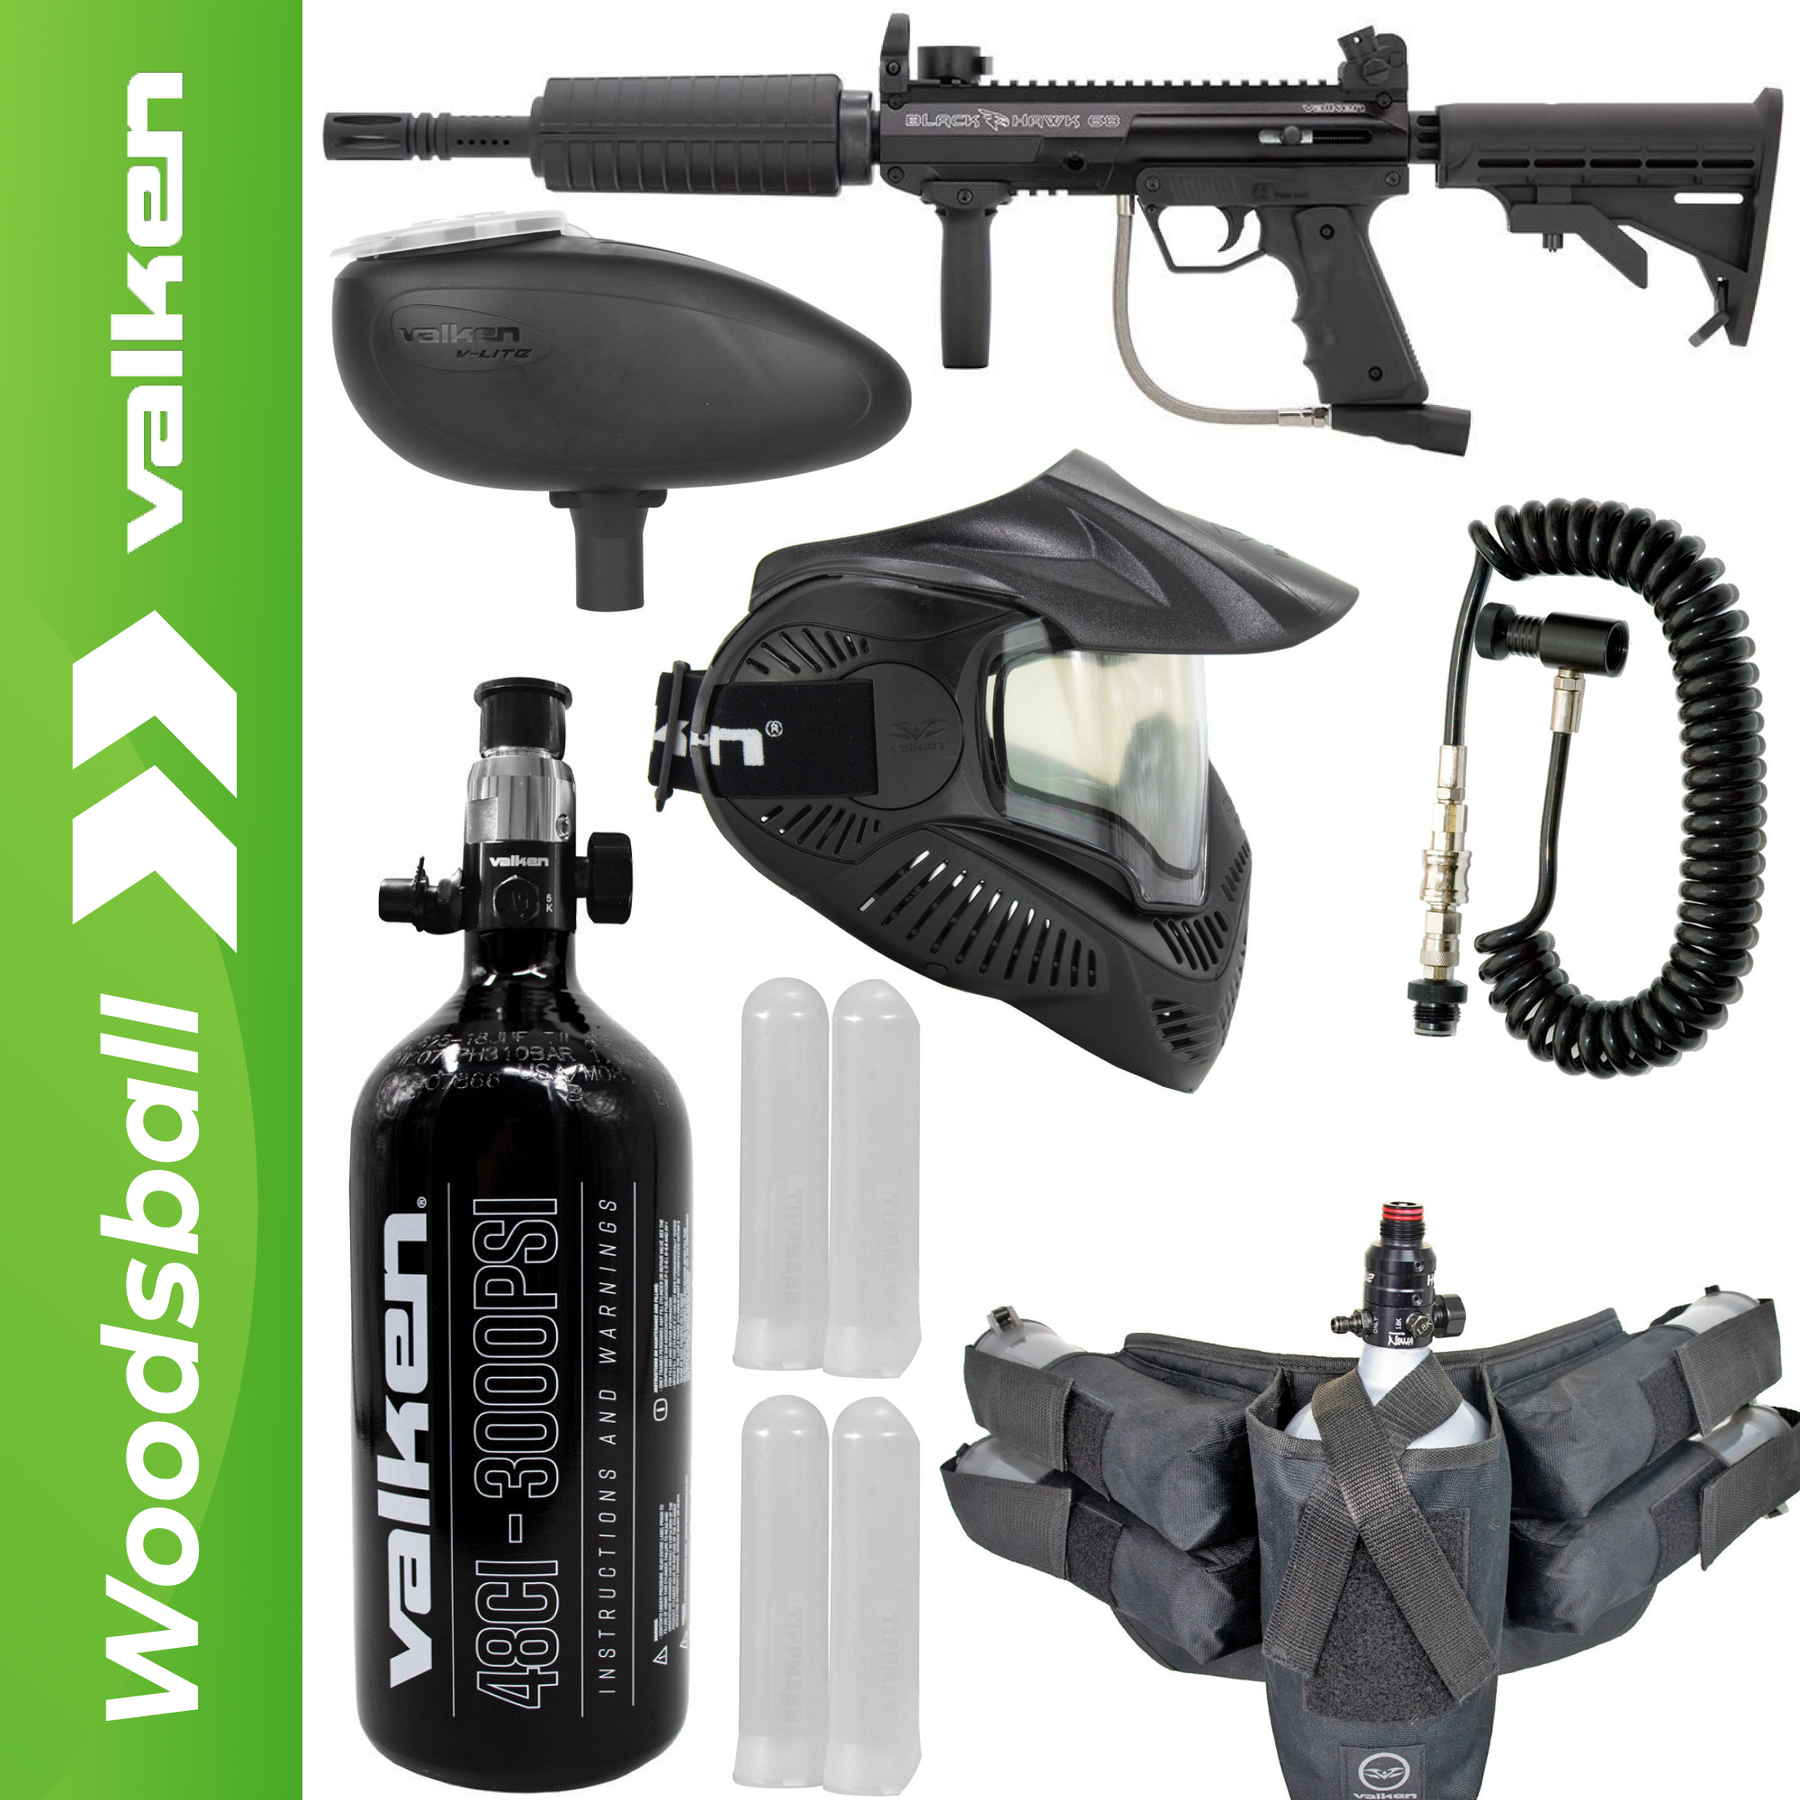 Valken Blackhawk Foxtrot Rig Paintball Gun Package